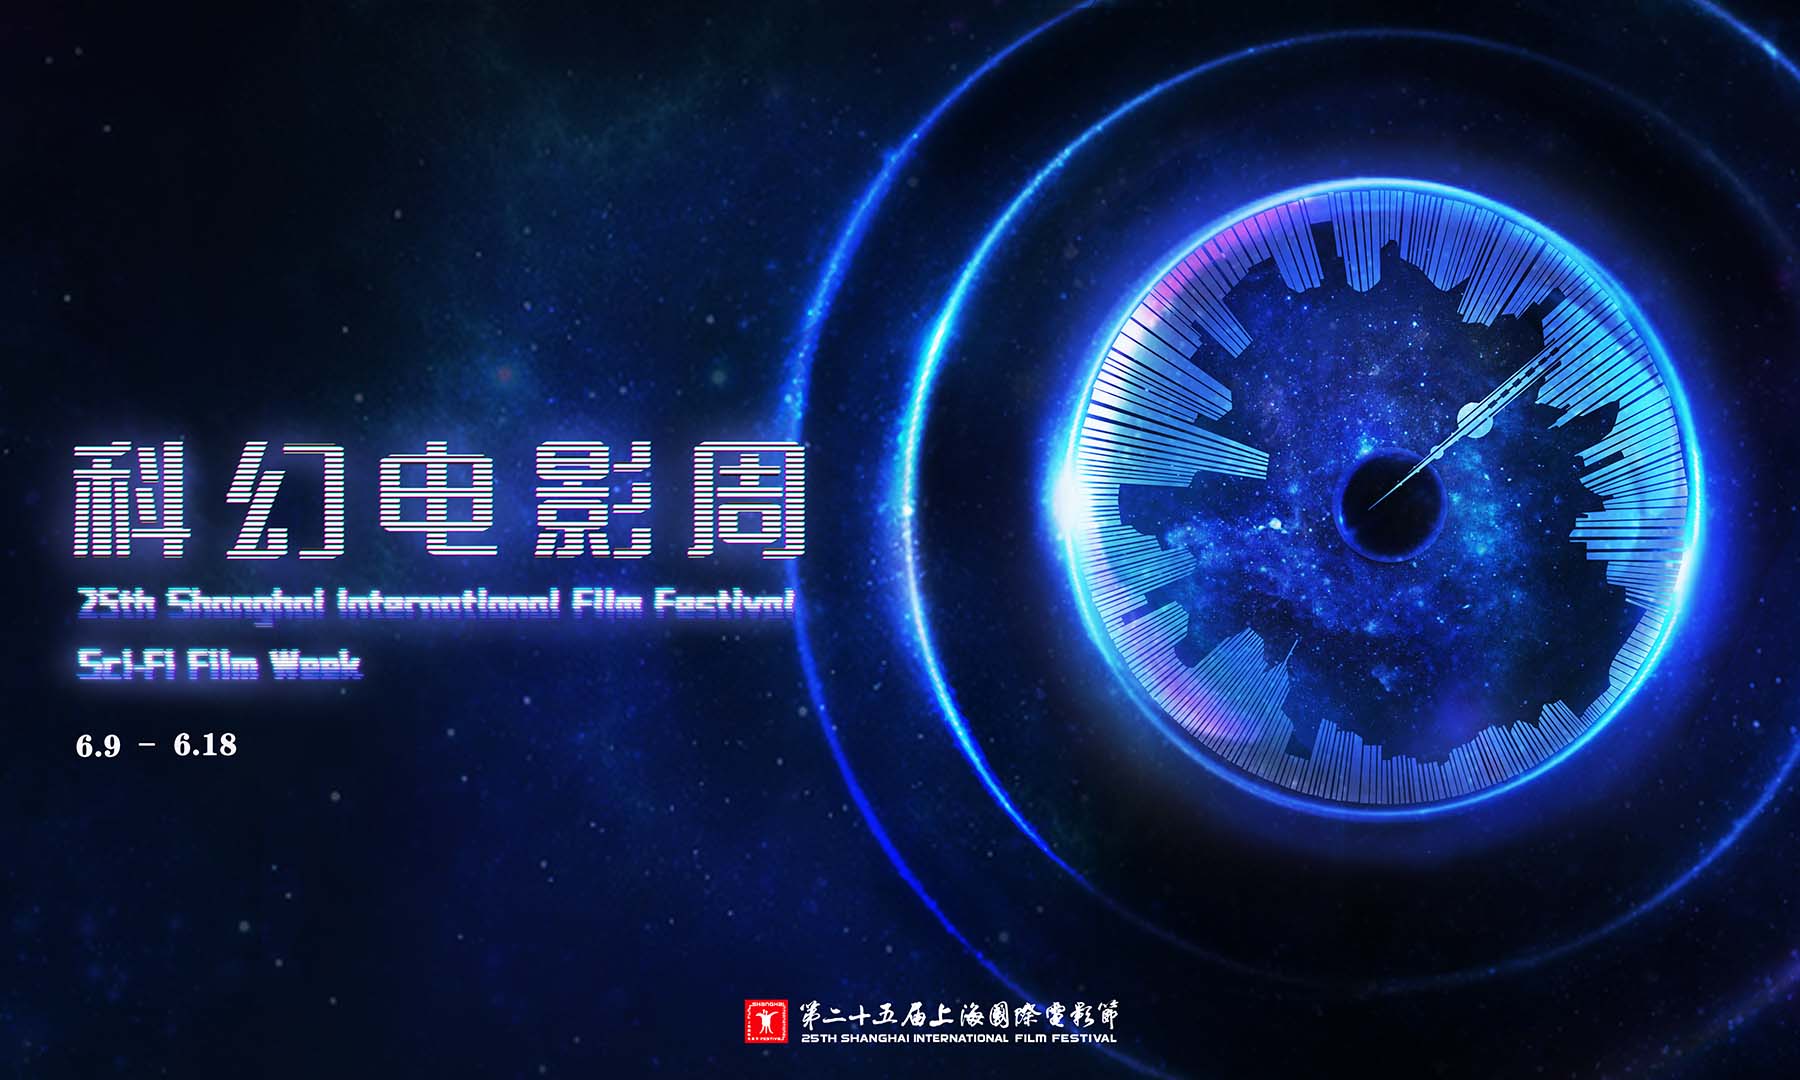 第二十五届上海国际电影节重磅推出“科幻电影周”